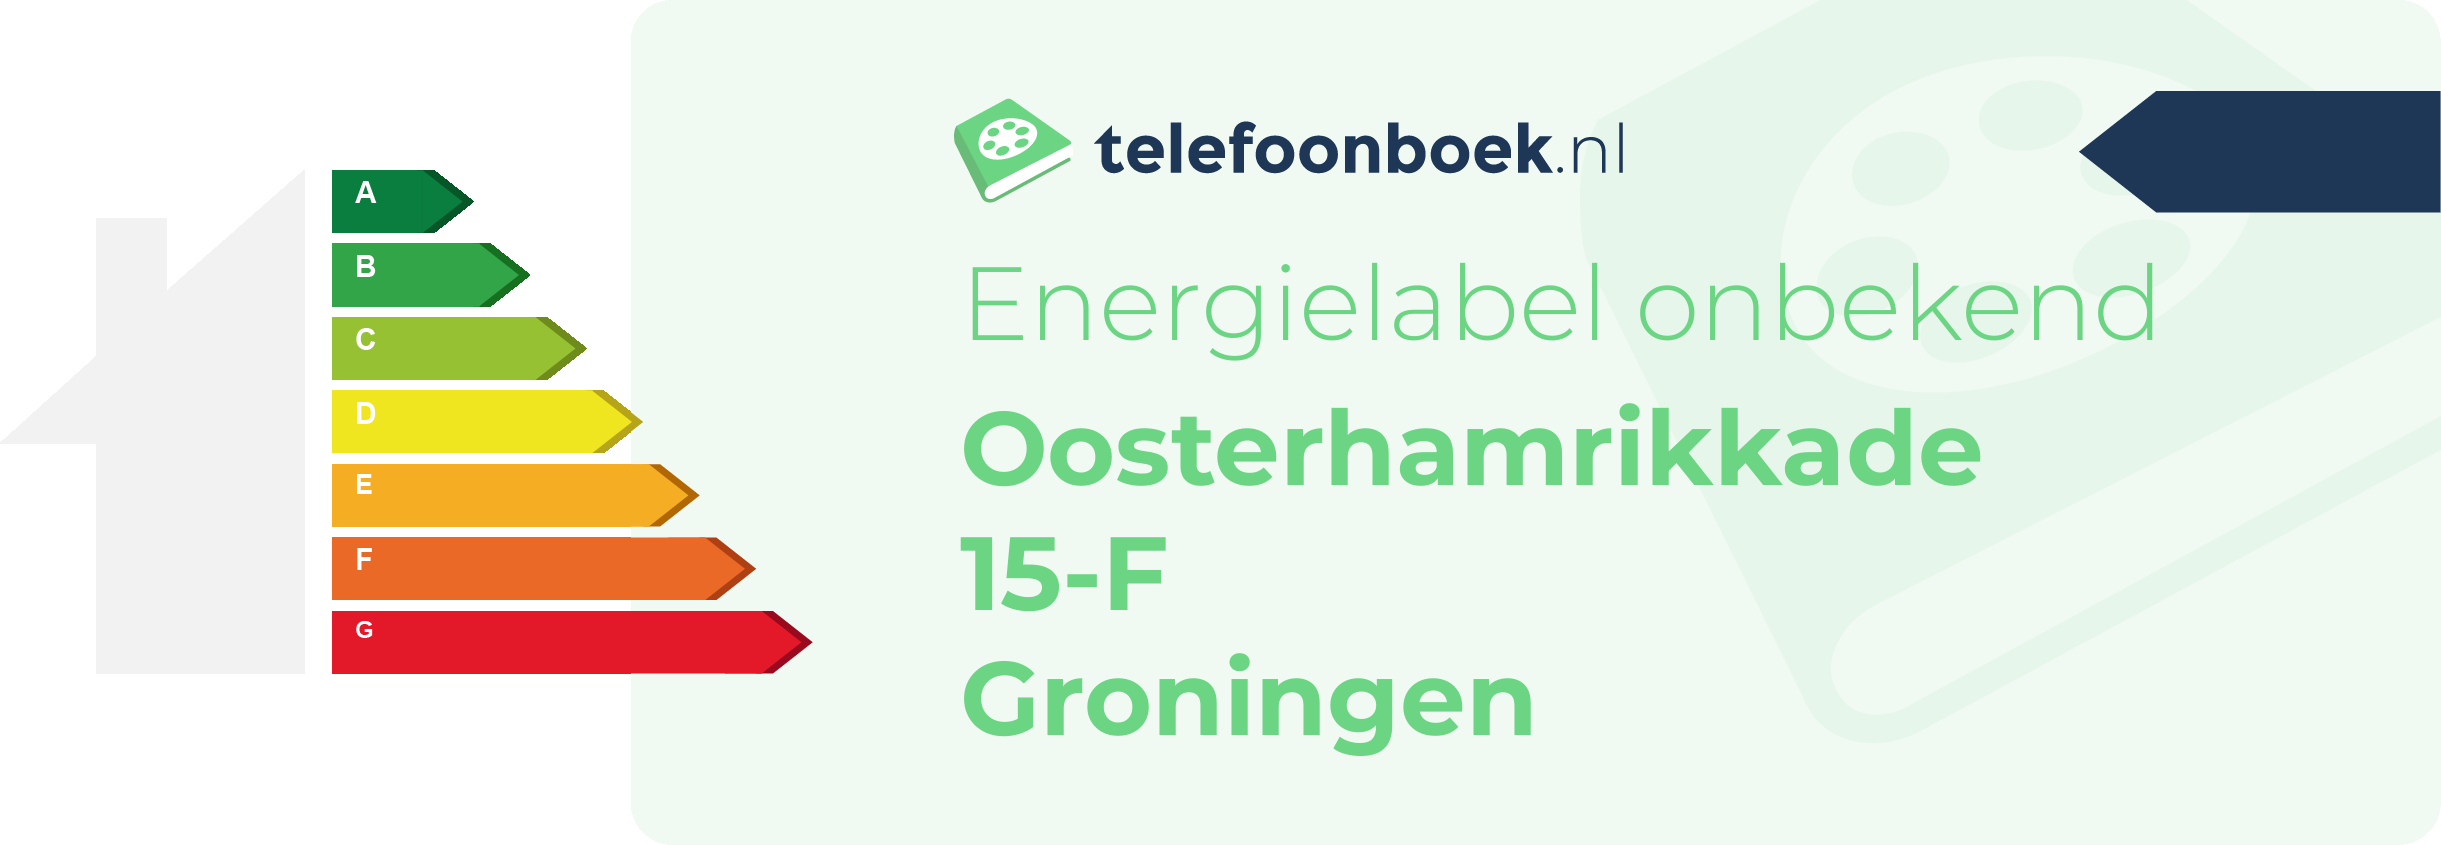 Energielabel Oosterhamrikkade 15-F Groningen